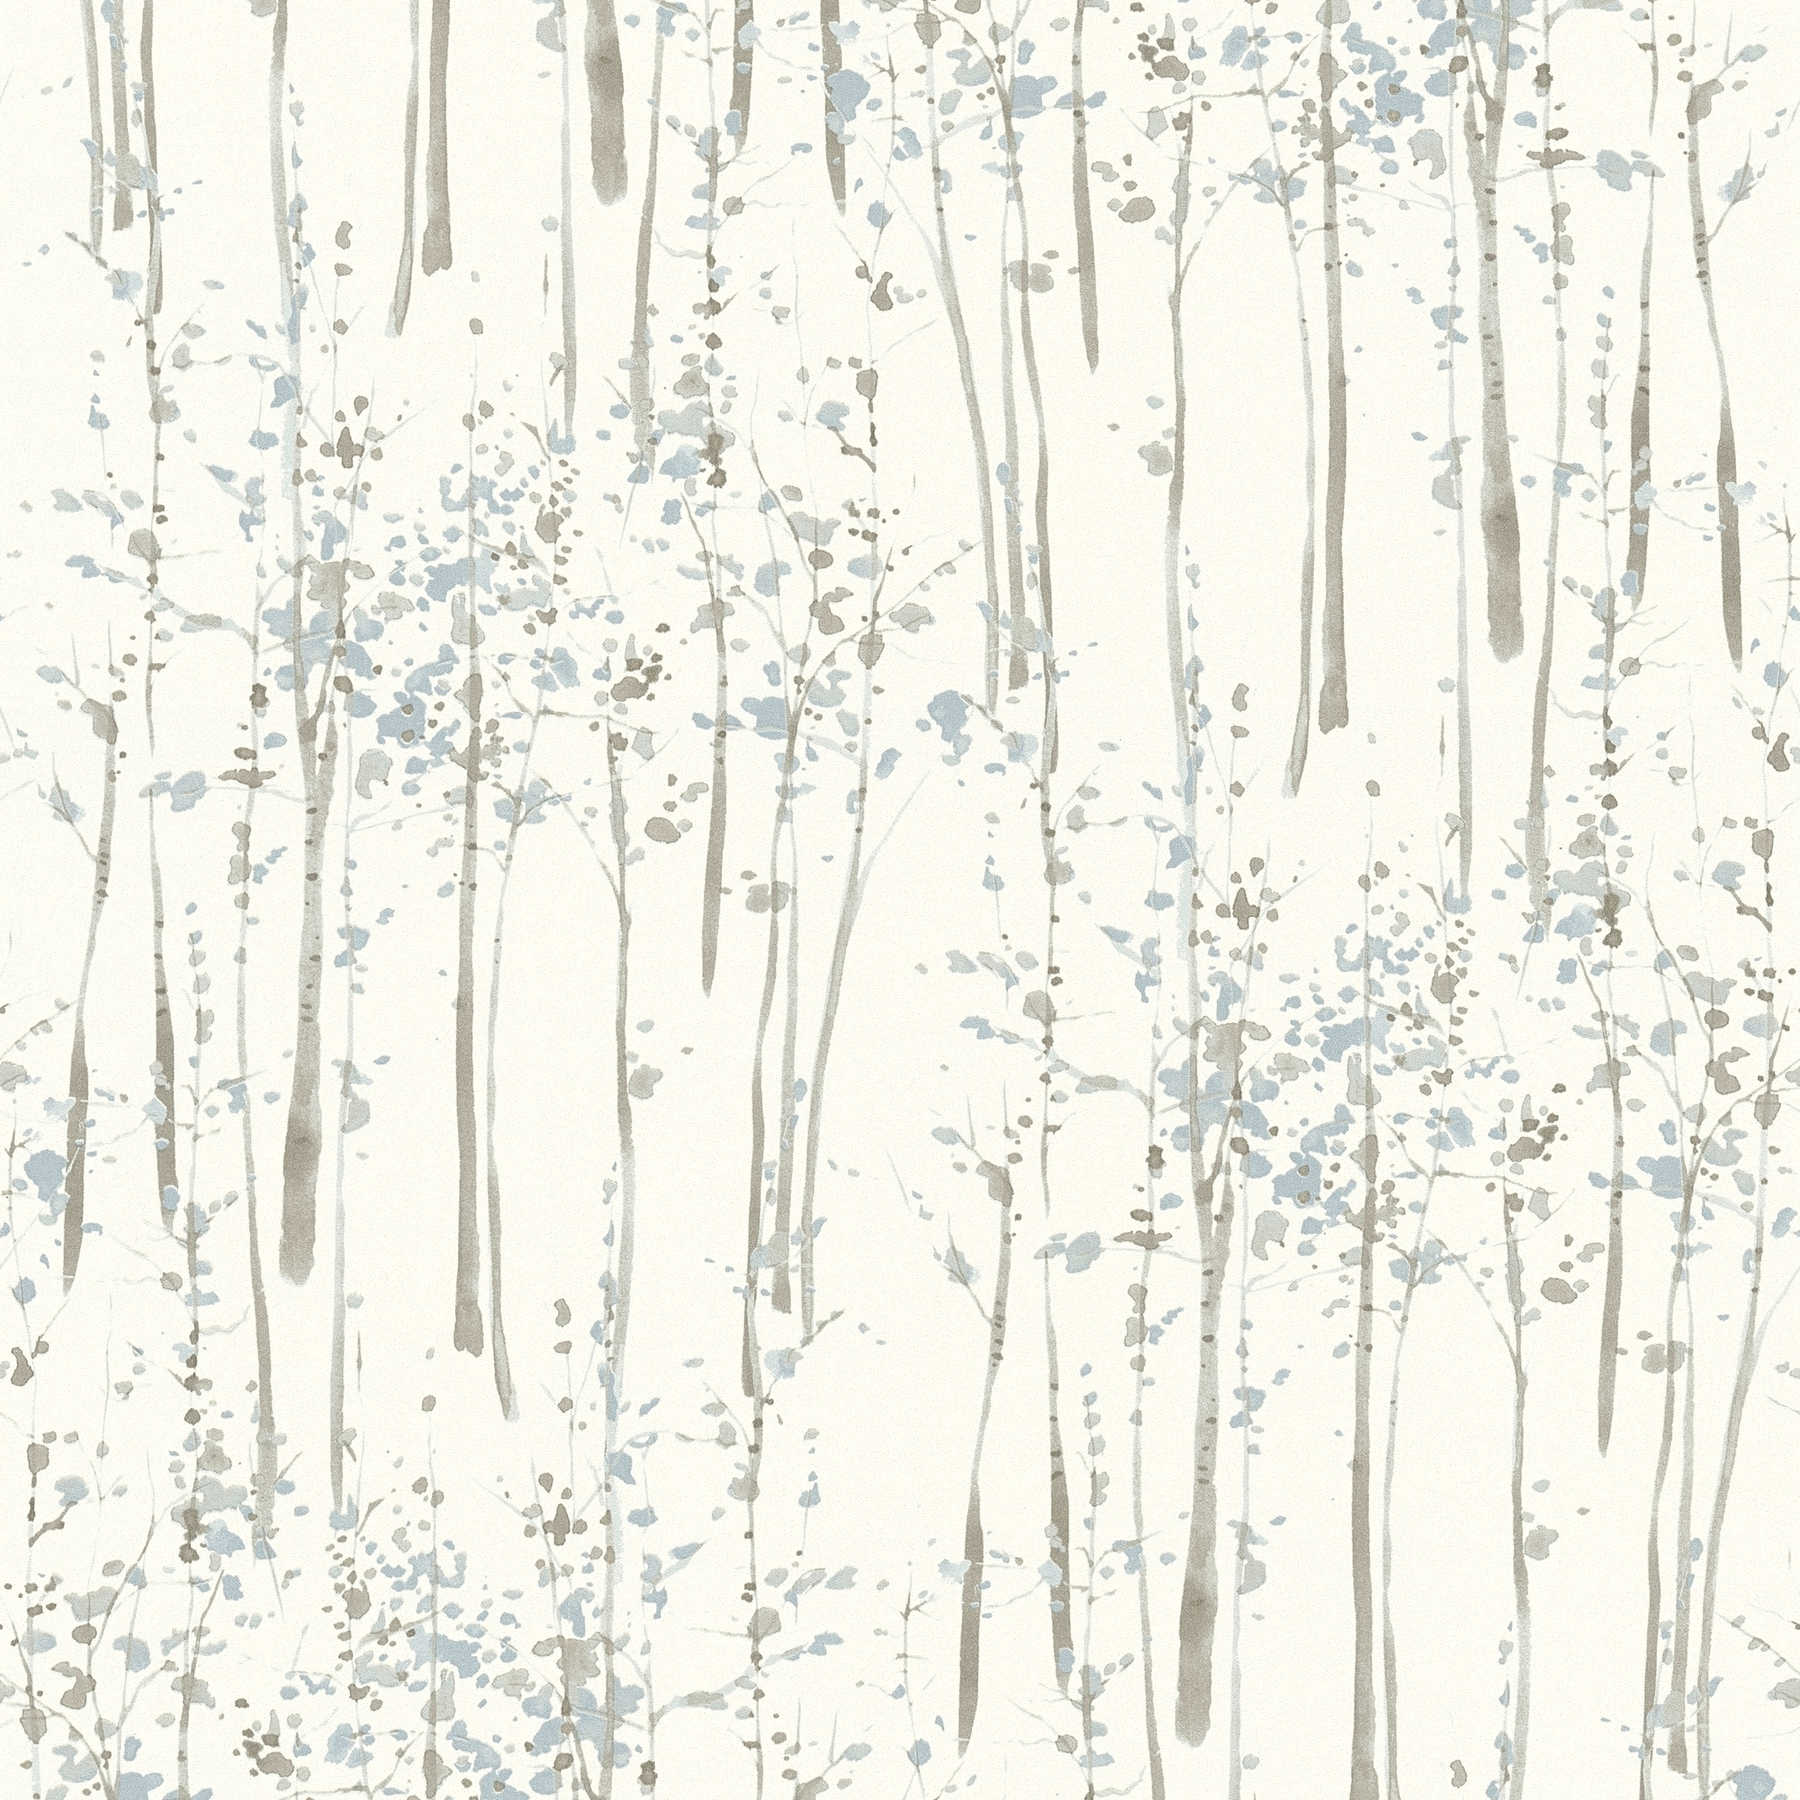         Tapete Baum Aquarell mit Naturfarben – Blau, Grau, Weiß
    